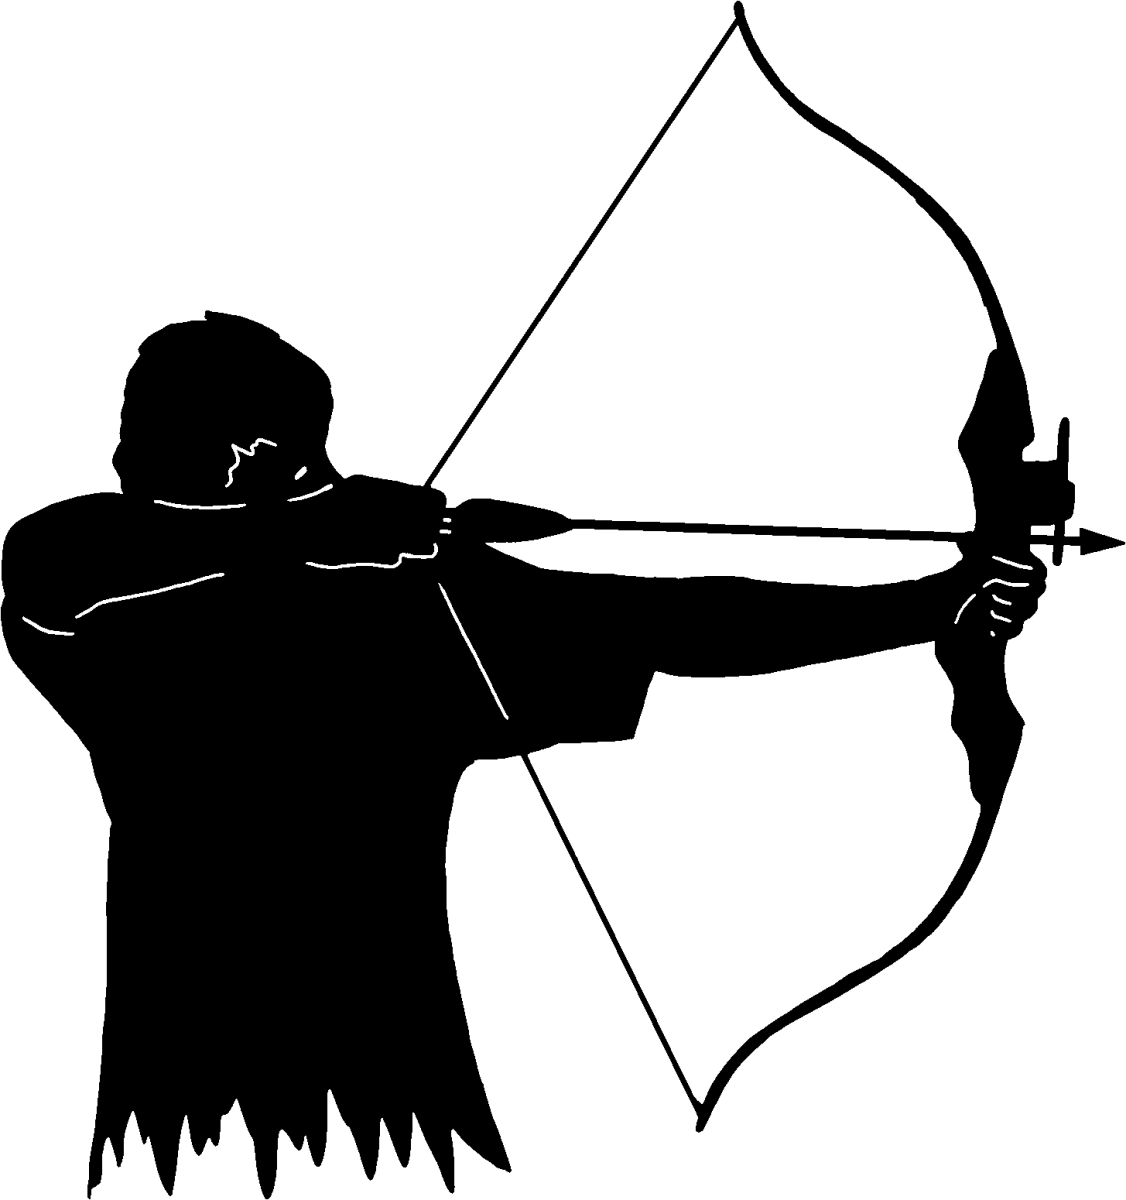 Archery bowman